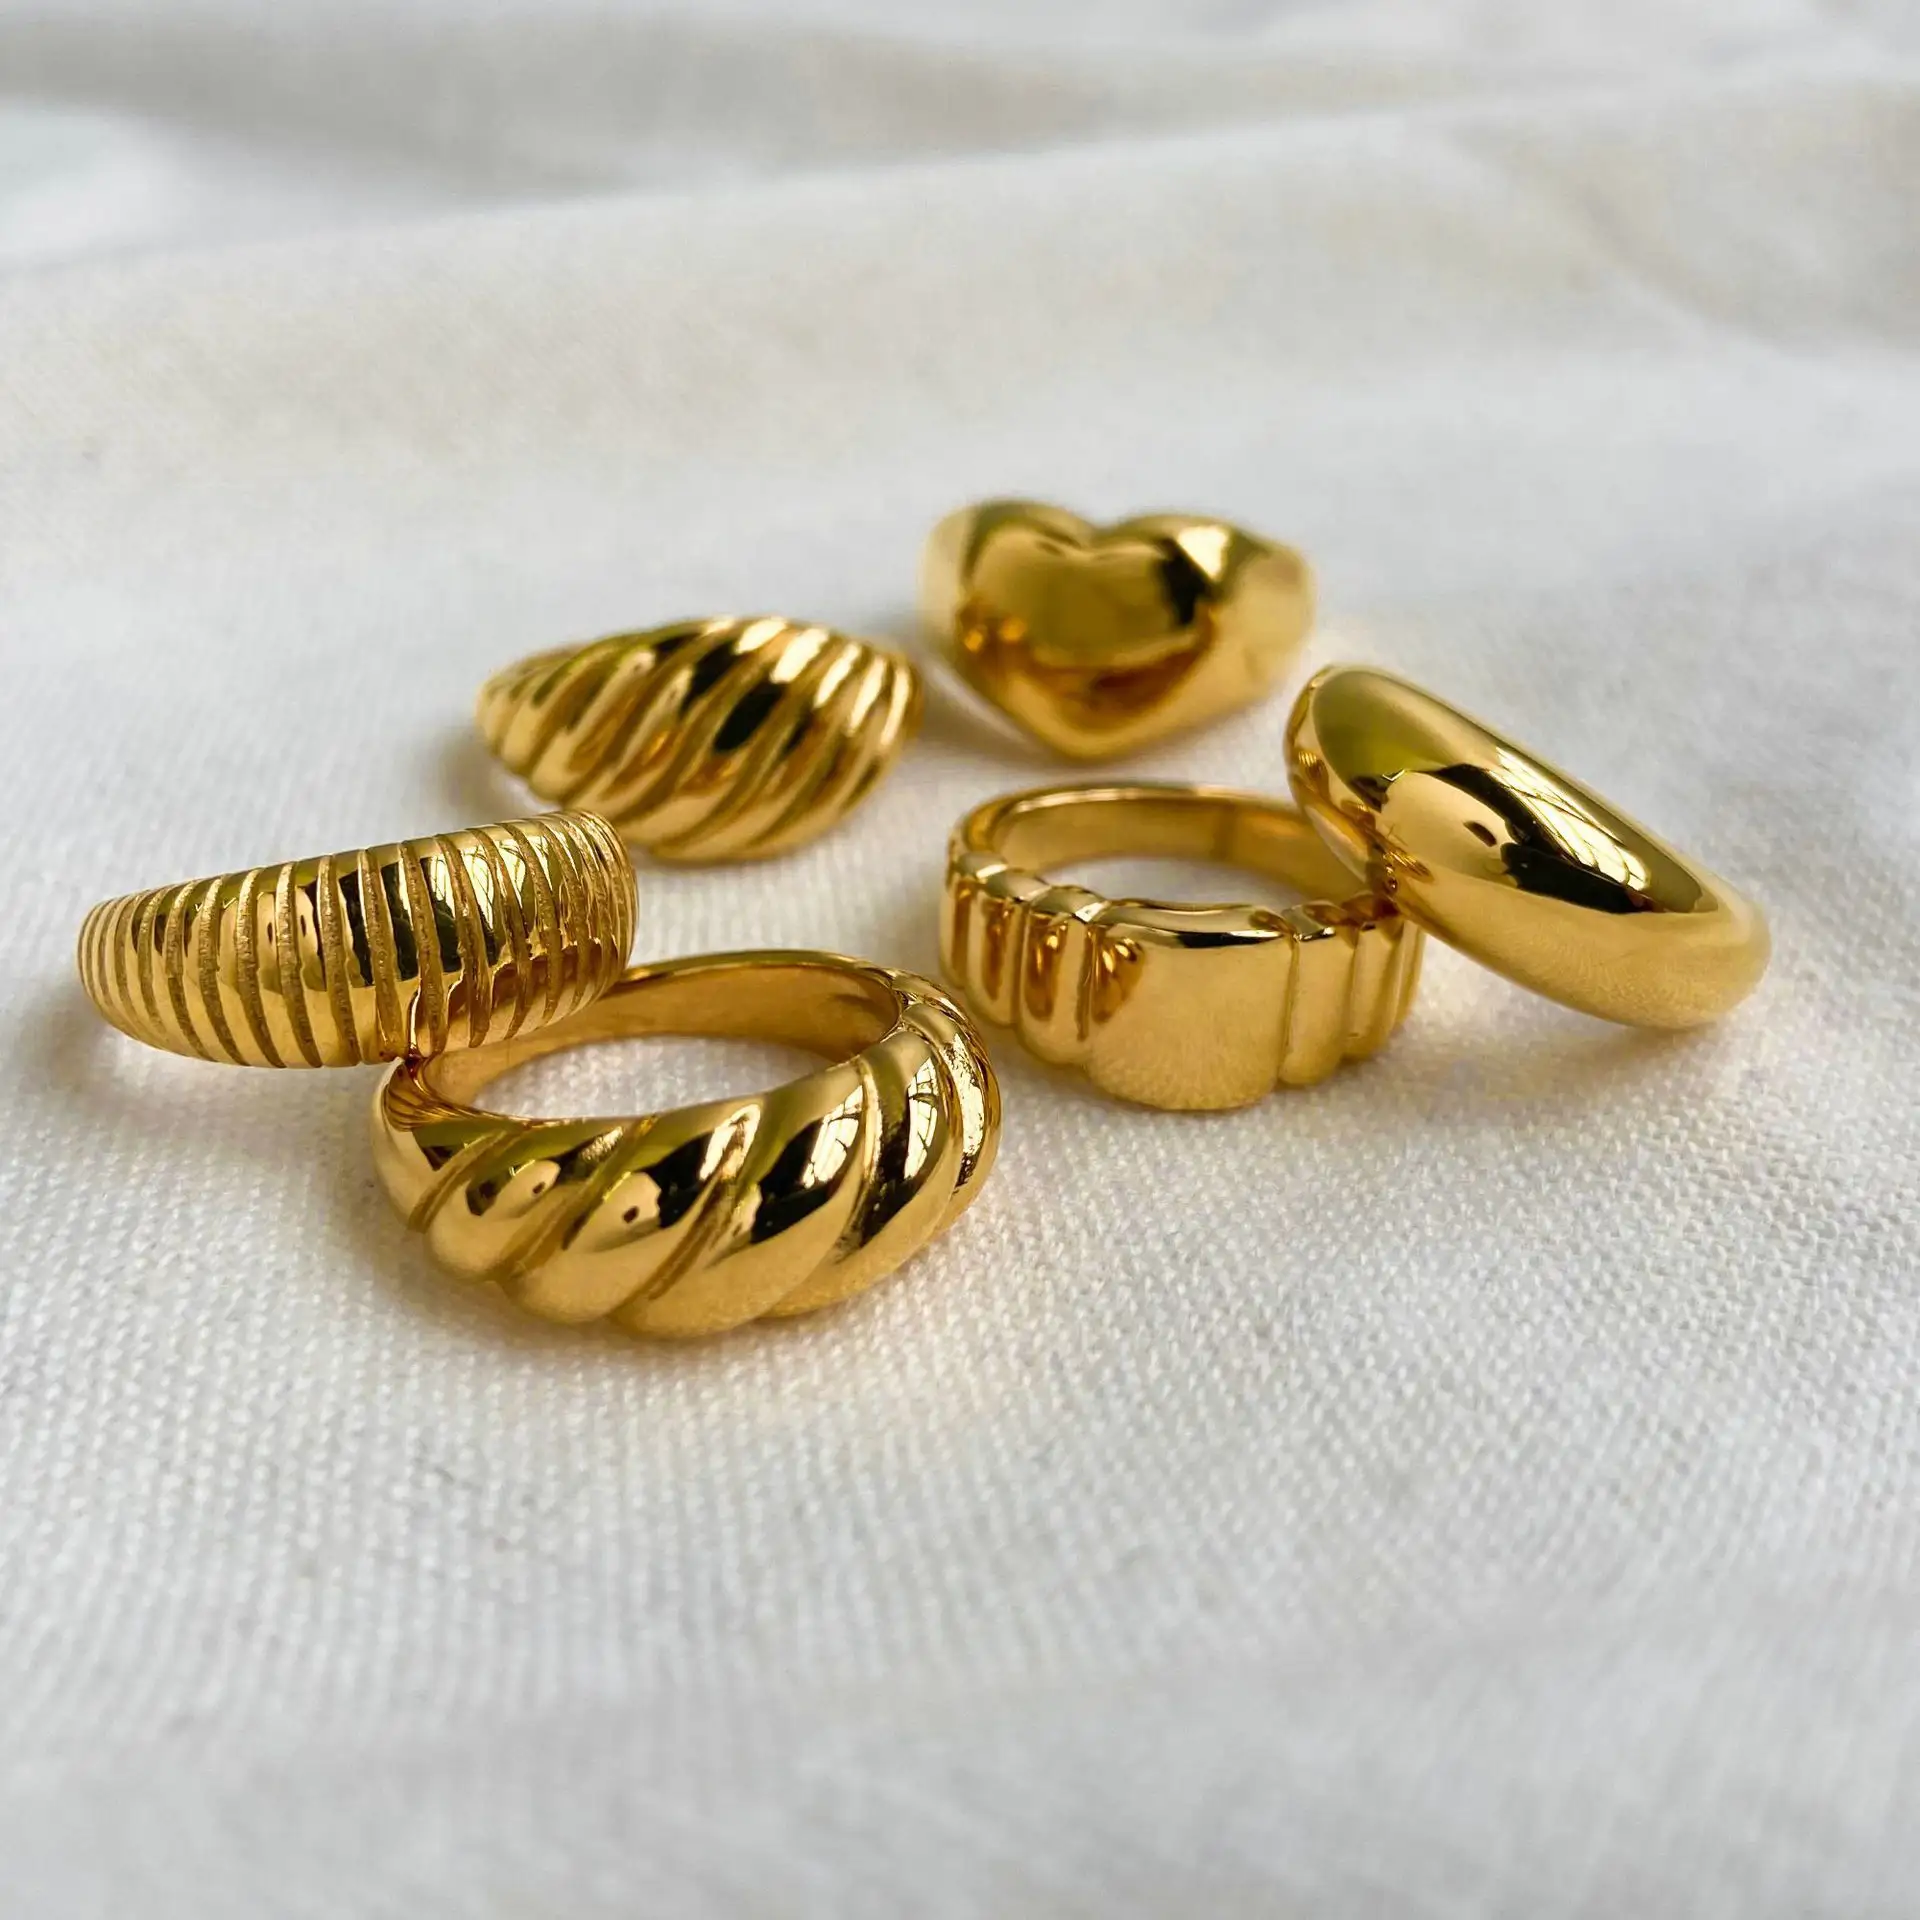 MECYLIFE kadın takı yüzükler paslanmaz çelik altın nişan yüzük suudi arabistan altın yüzük tasarımları